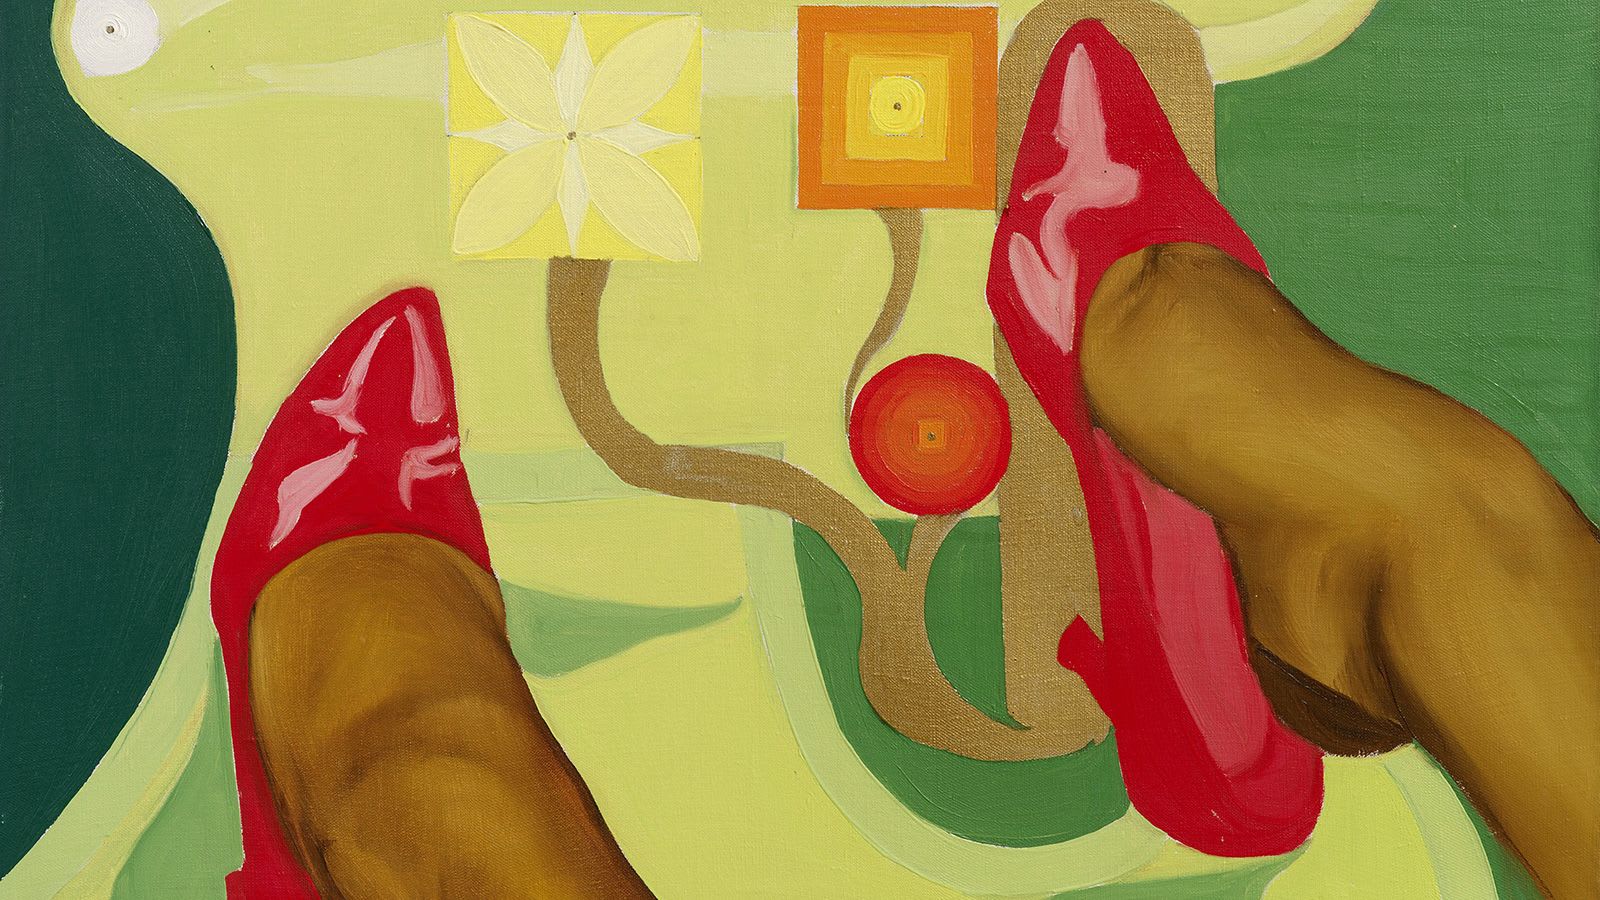 كانت رسامة فن البوب الإيروتيكي هذه ثورية في الستينيات.. كيف توقفت مسيرتها المهنية فجأة؟